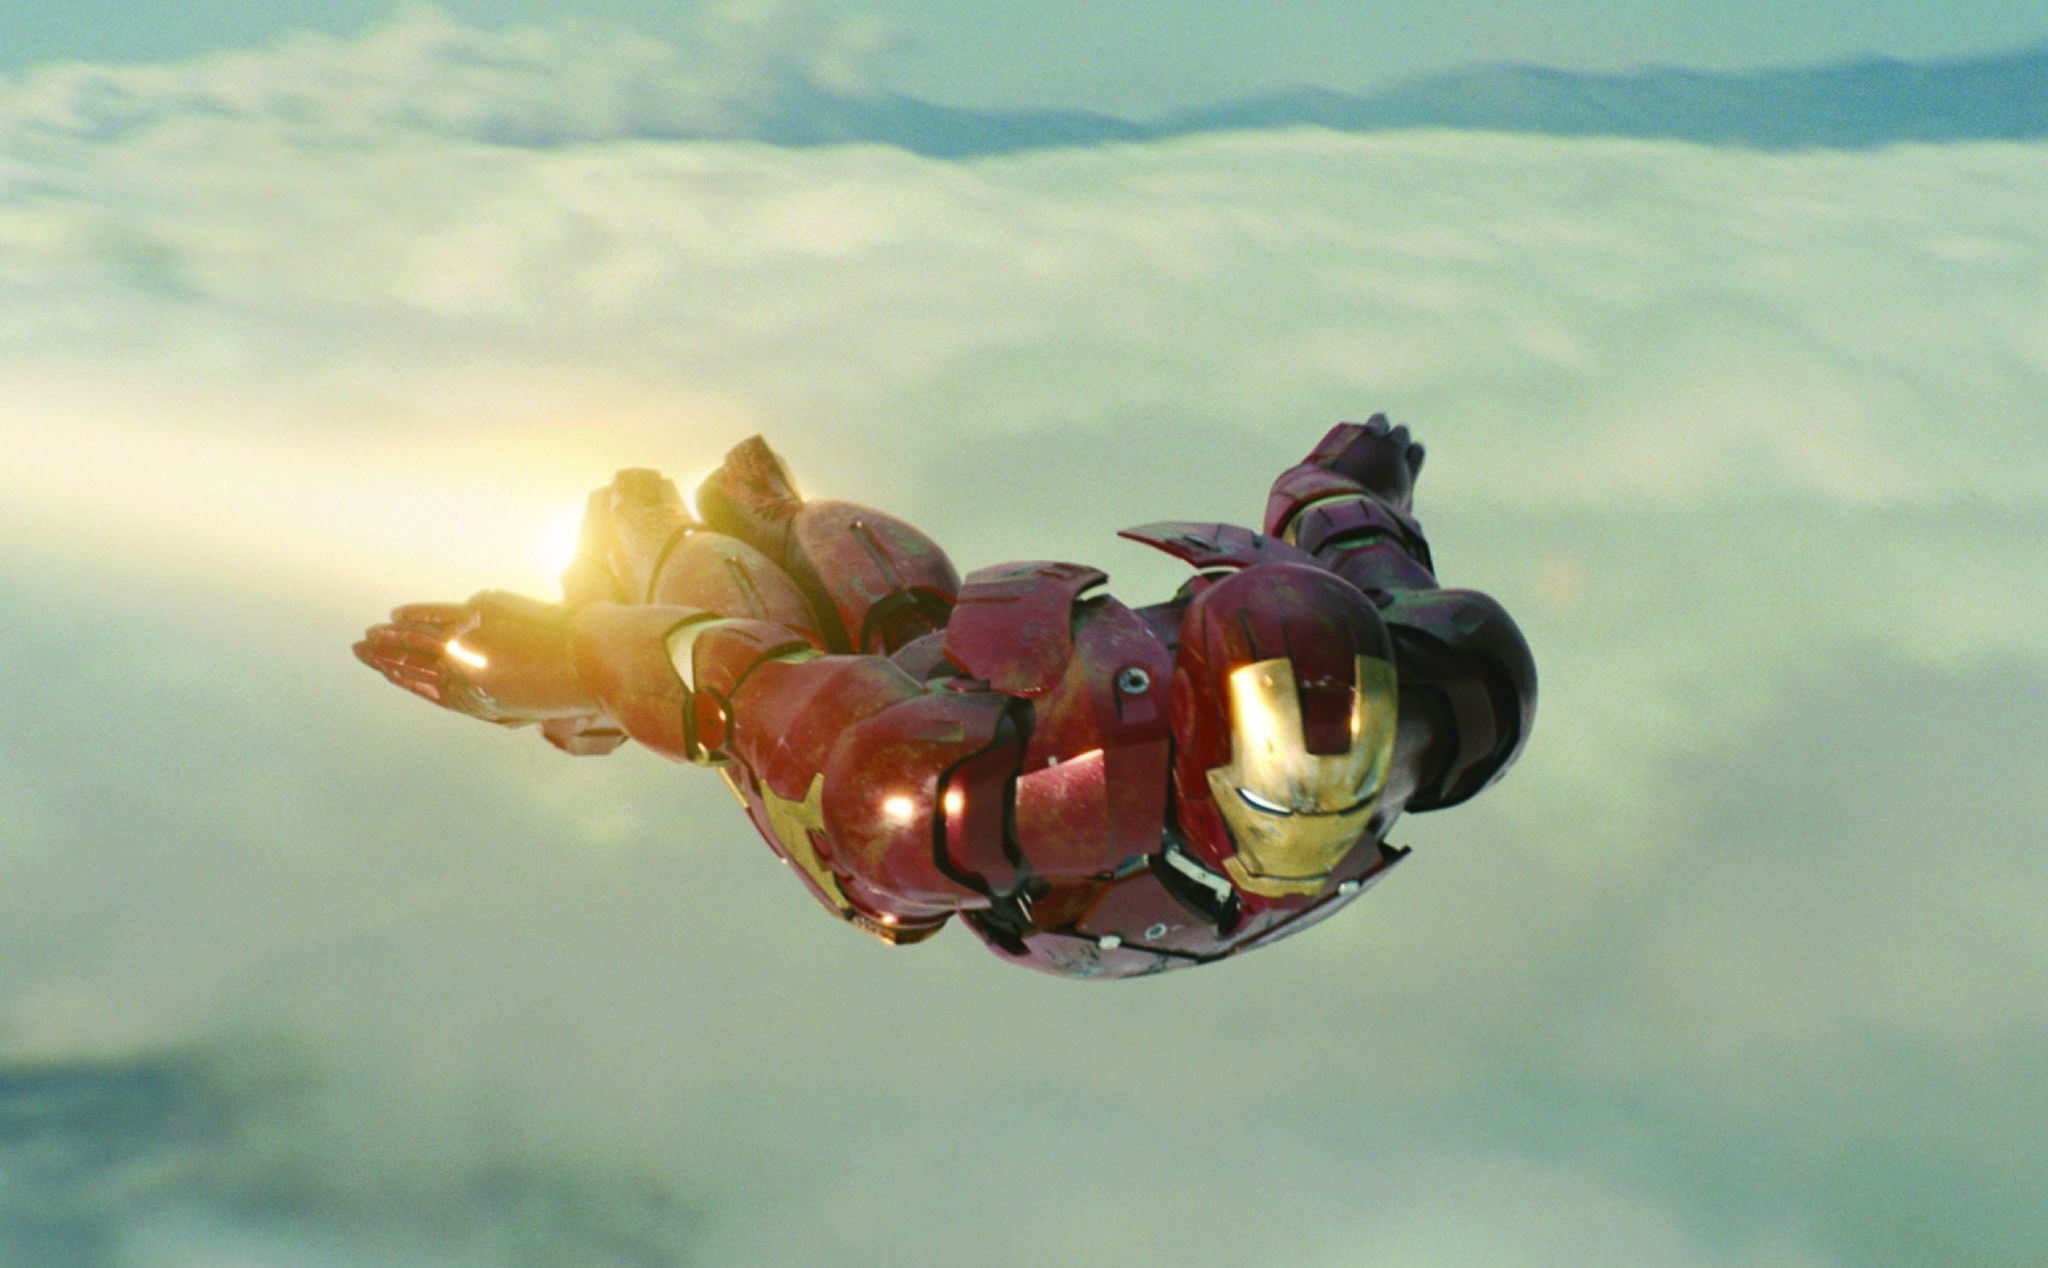 100+ Hình nền, ảnh Iron man đẹp 4k full HD cho máy tính, điện thoại